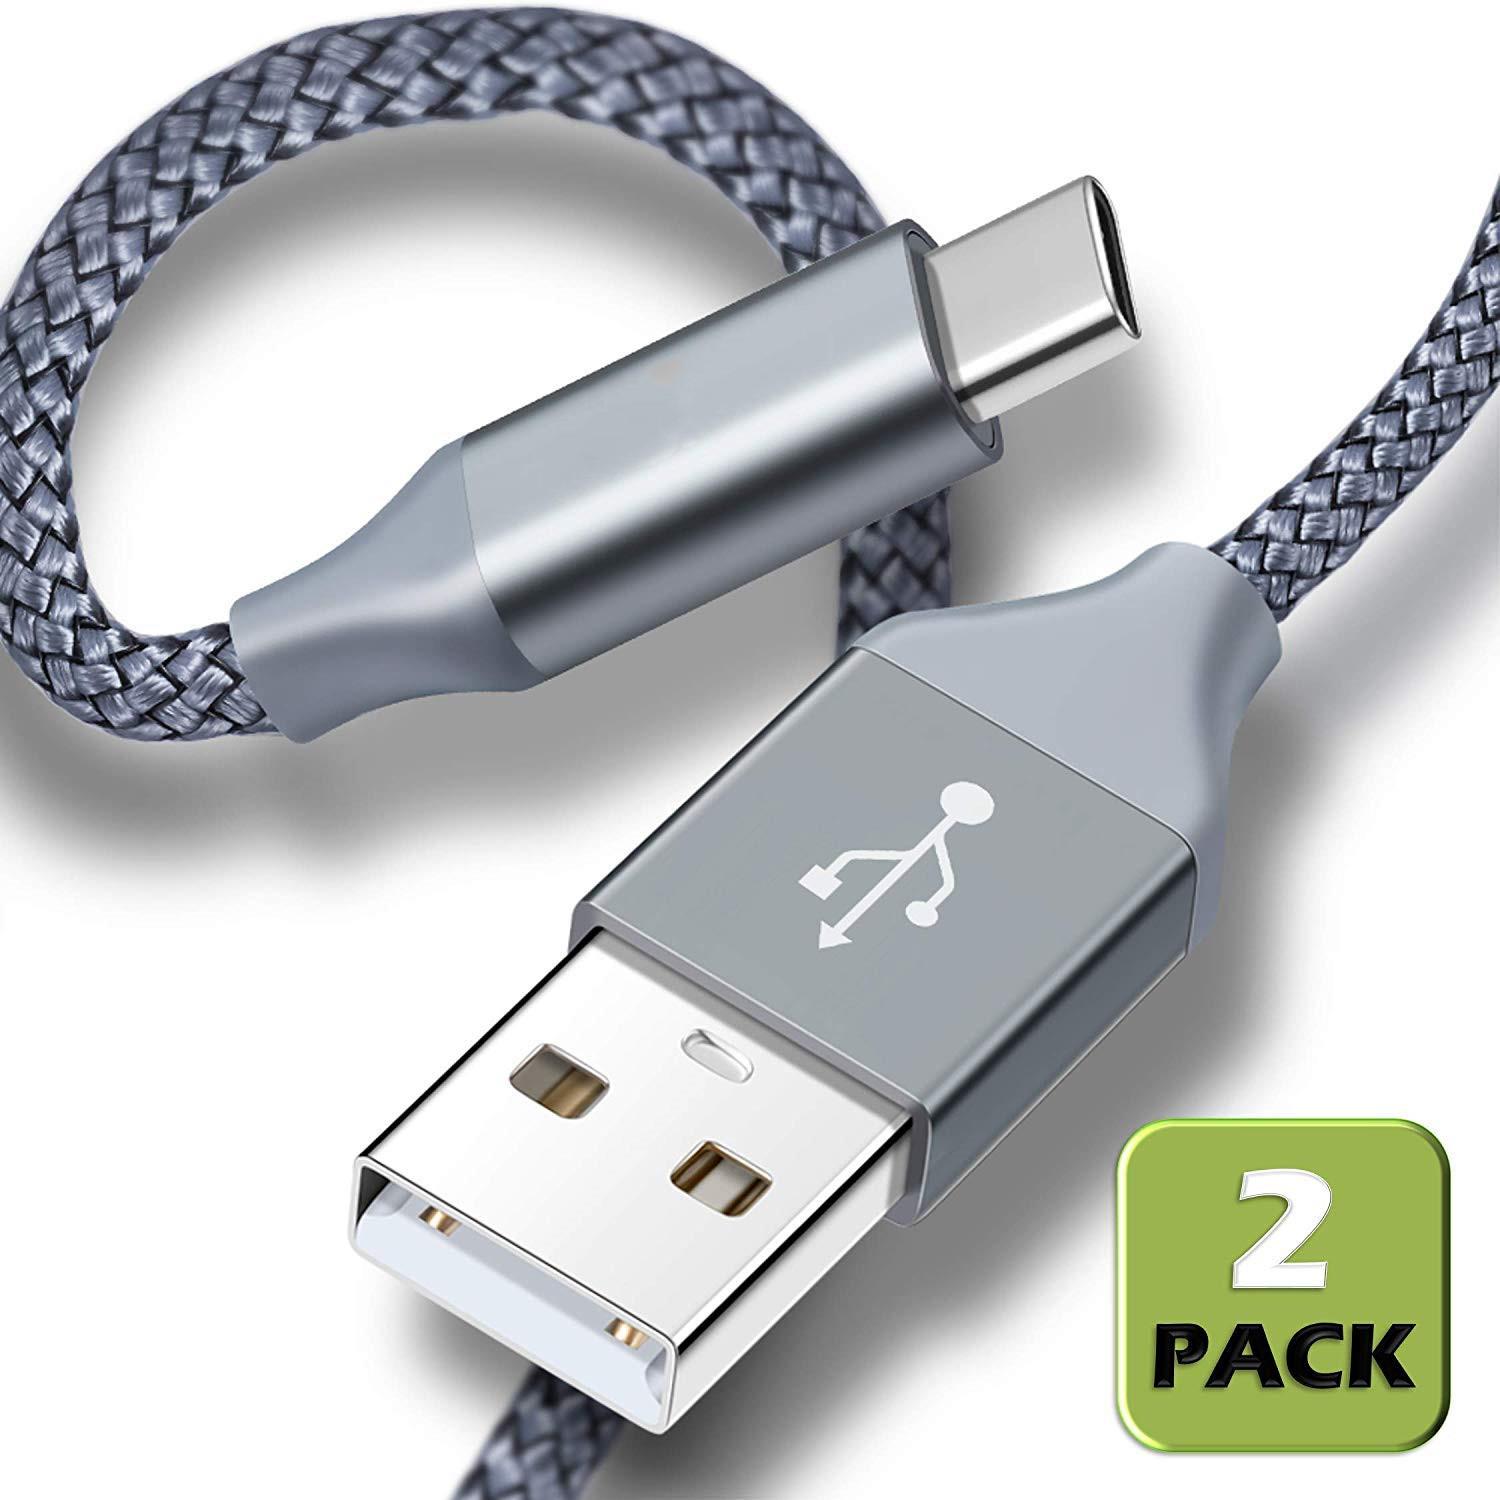 Изображение товара: Кабель USB Type-C/USB A (6,6 футов, 2 упаковки), нейлоновый плетеный кабель для быстрой зарядки, для Samsung Galaxy S9, S8